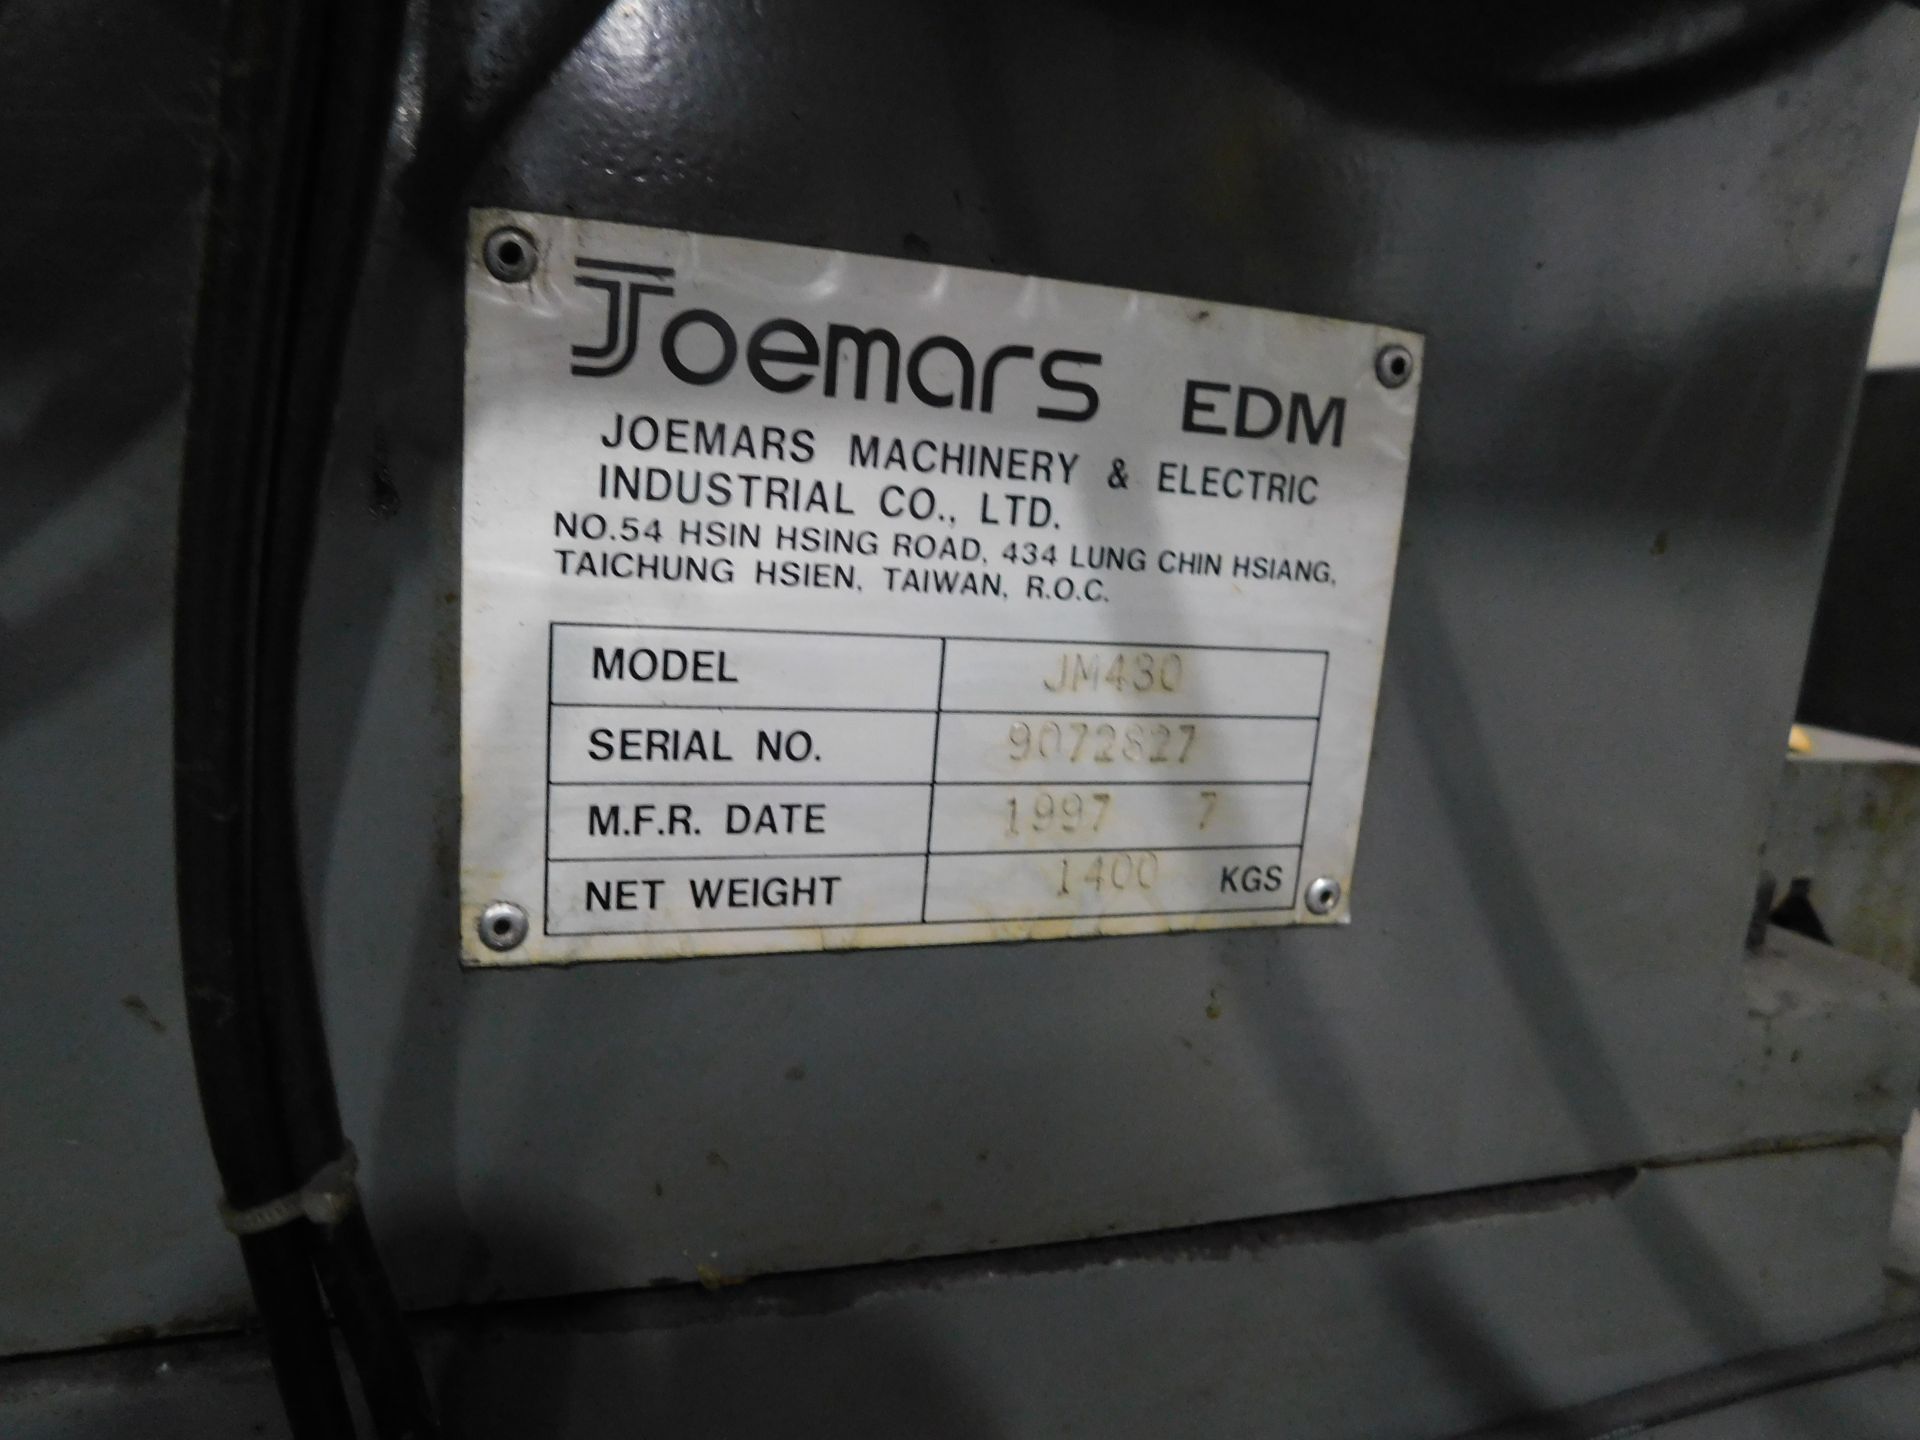 Joemars EDM 600 Centre Manual Spark Eroding Machine, Model Number JM430, Serial Number 9072827 ( - Image 20 of 21